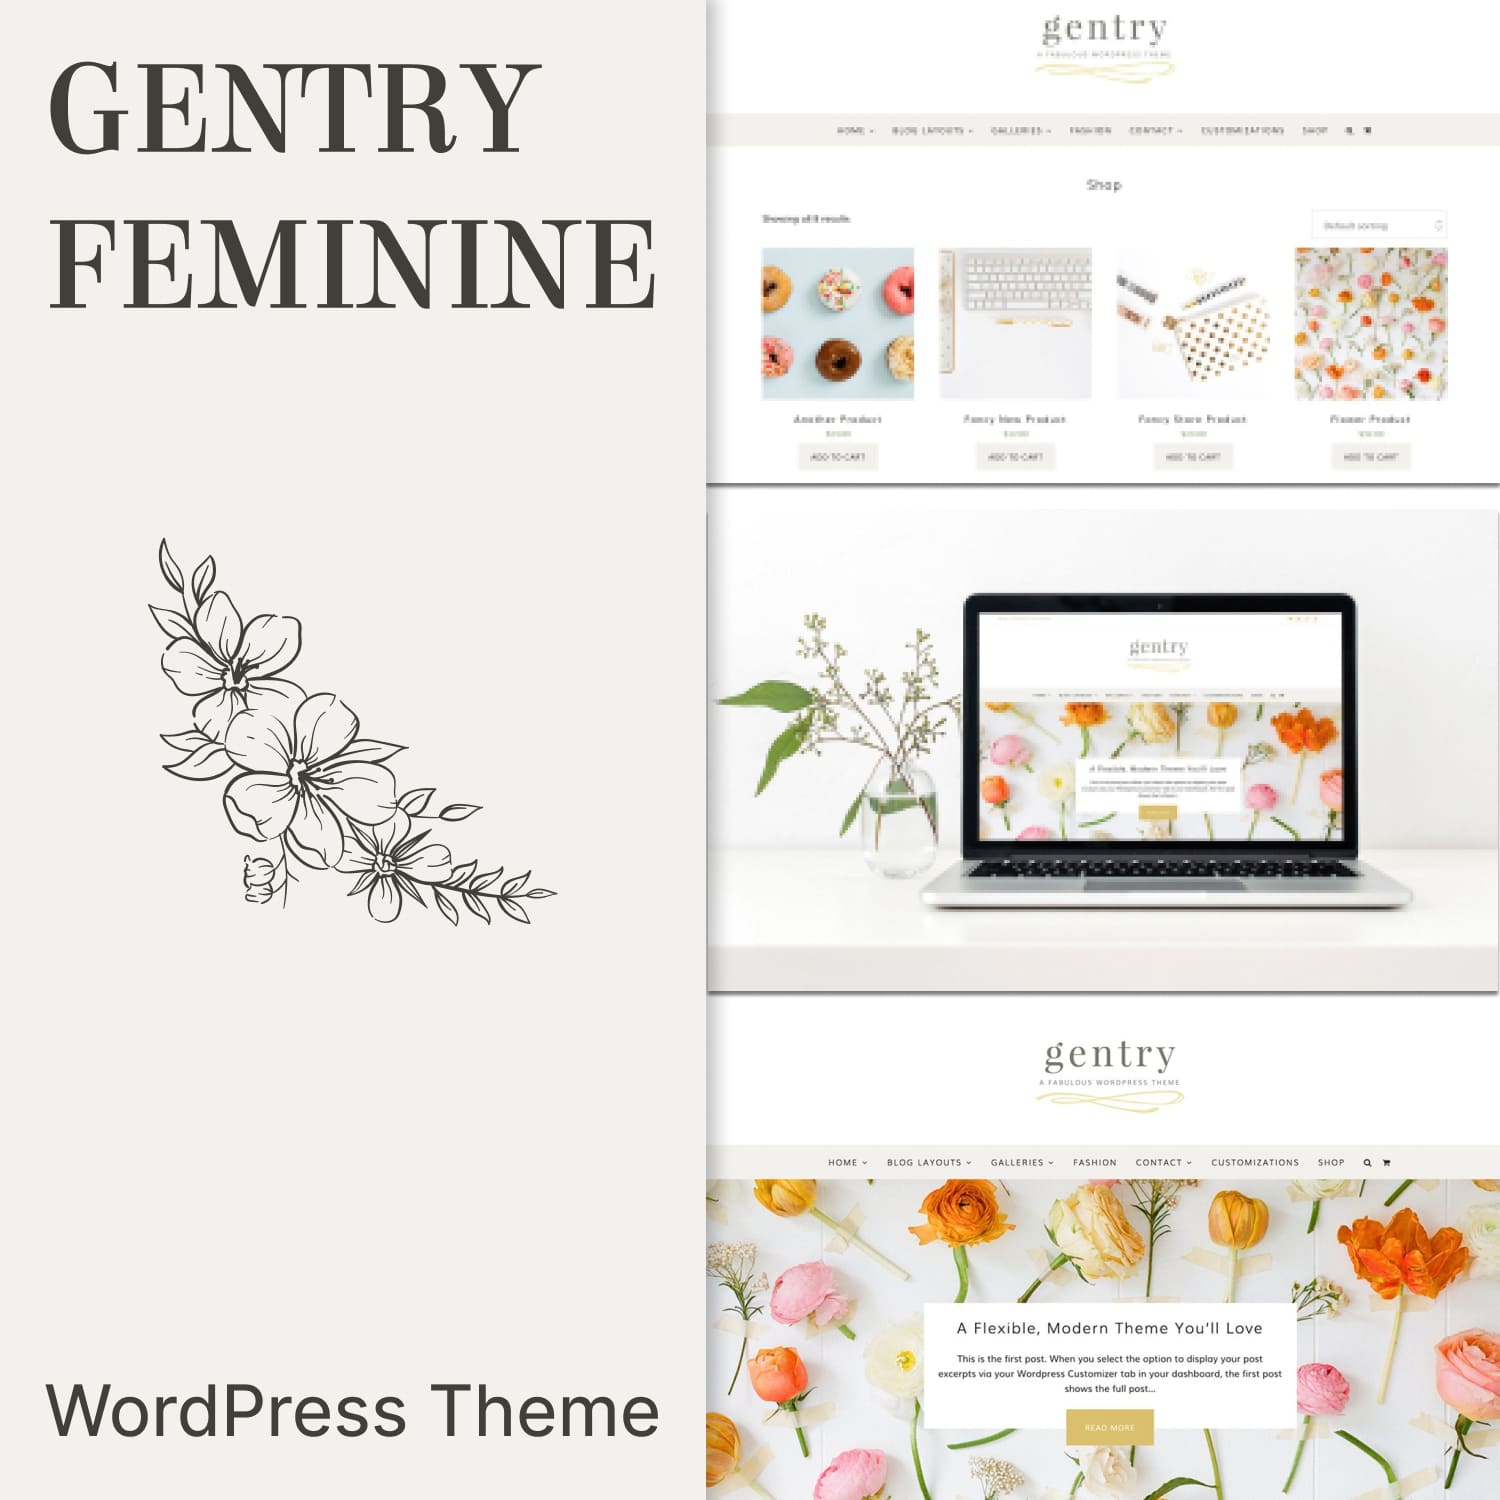 Gentry feminine wordpress theme.